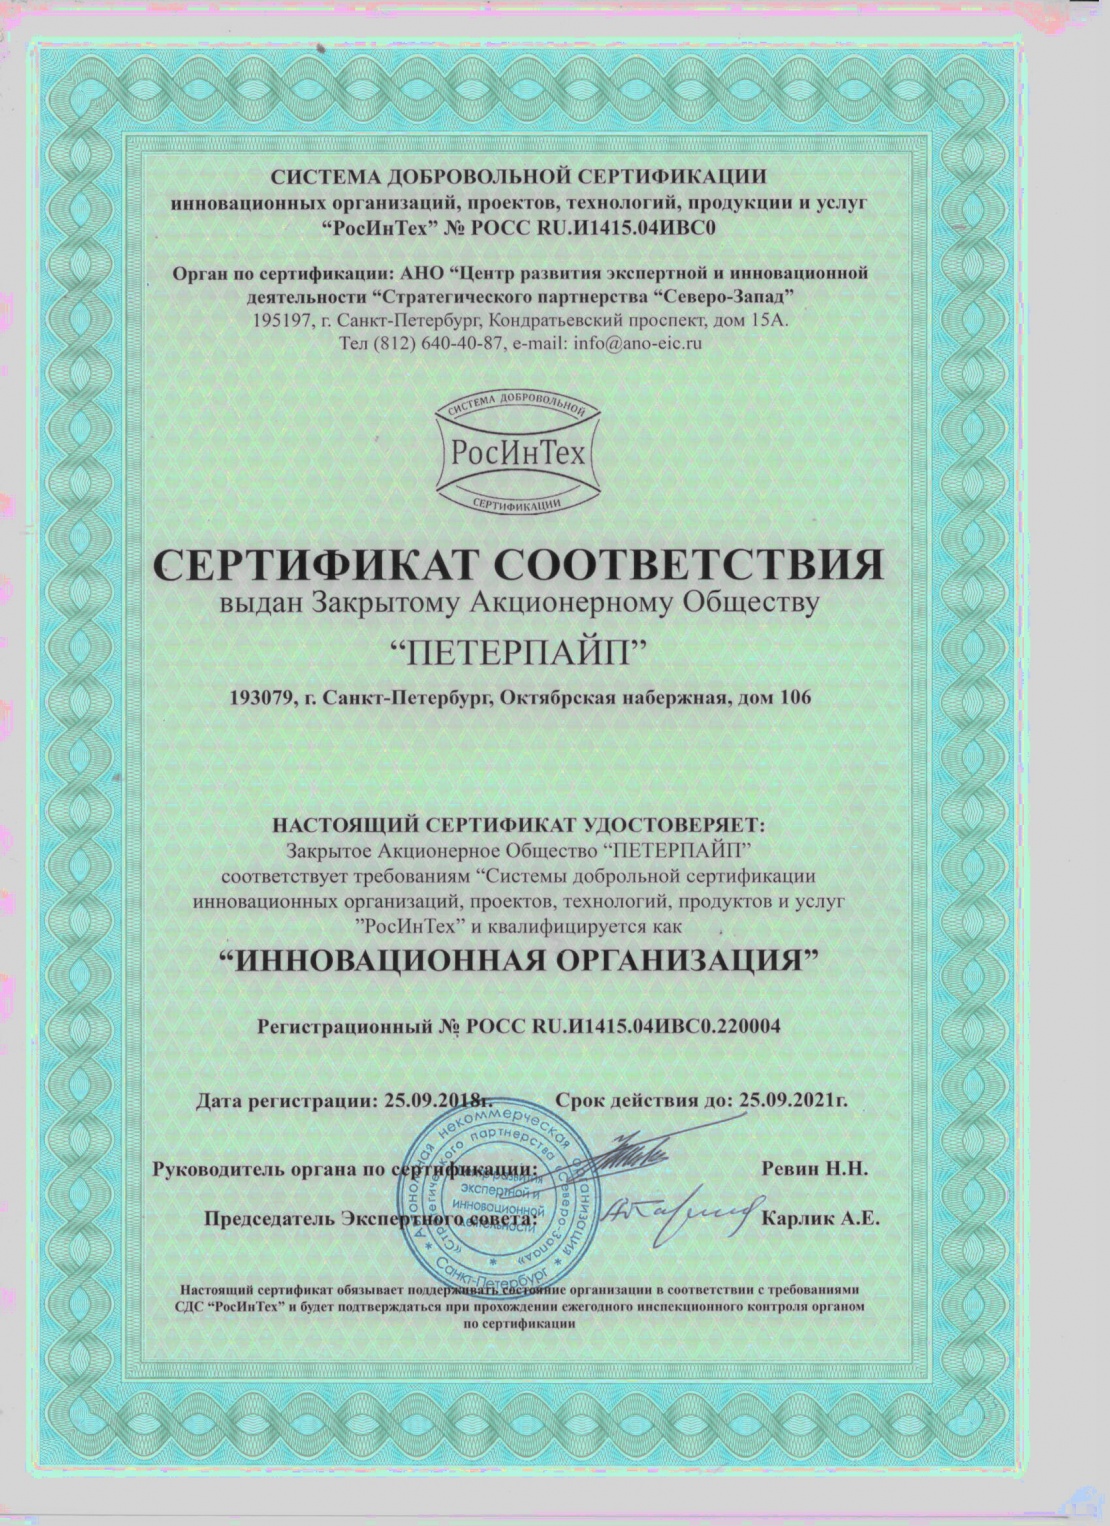 ЗАО "ПЕТЕРПАЙП" получило Сертификат Соответствия "ИННОВАЦИОННАЯ ОРГАНИЗАЦИЯ"